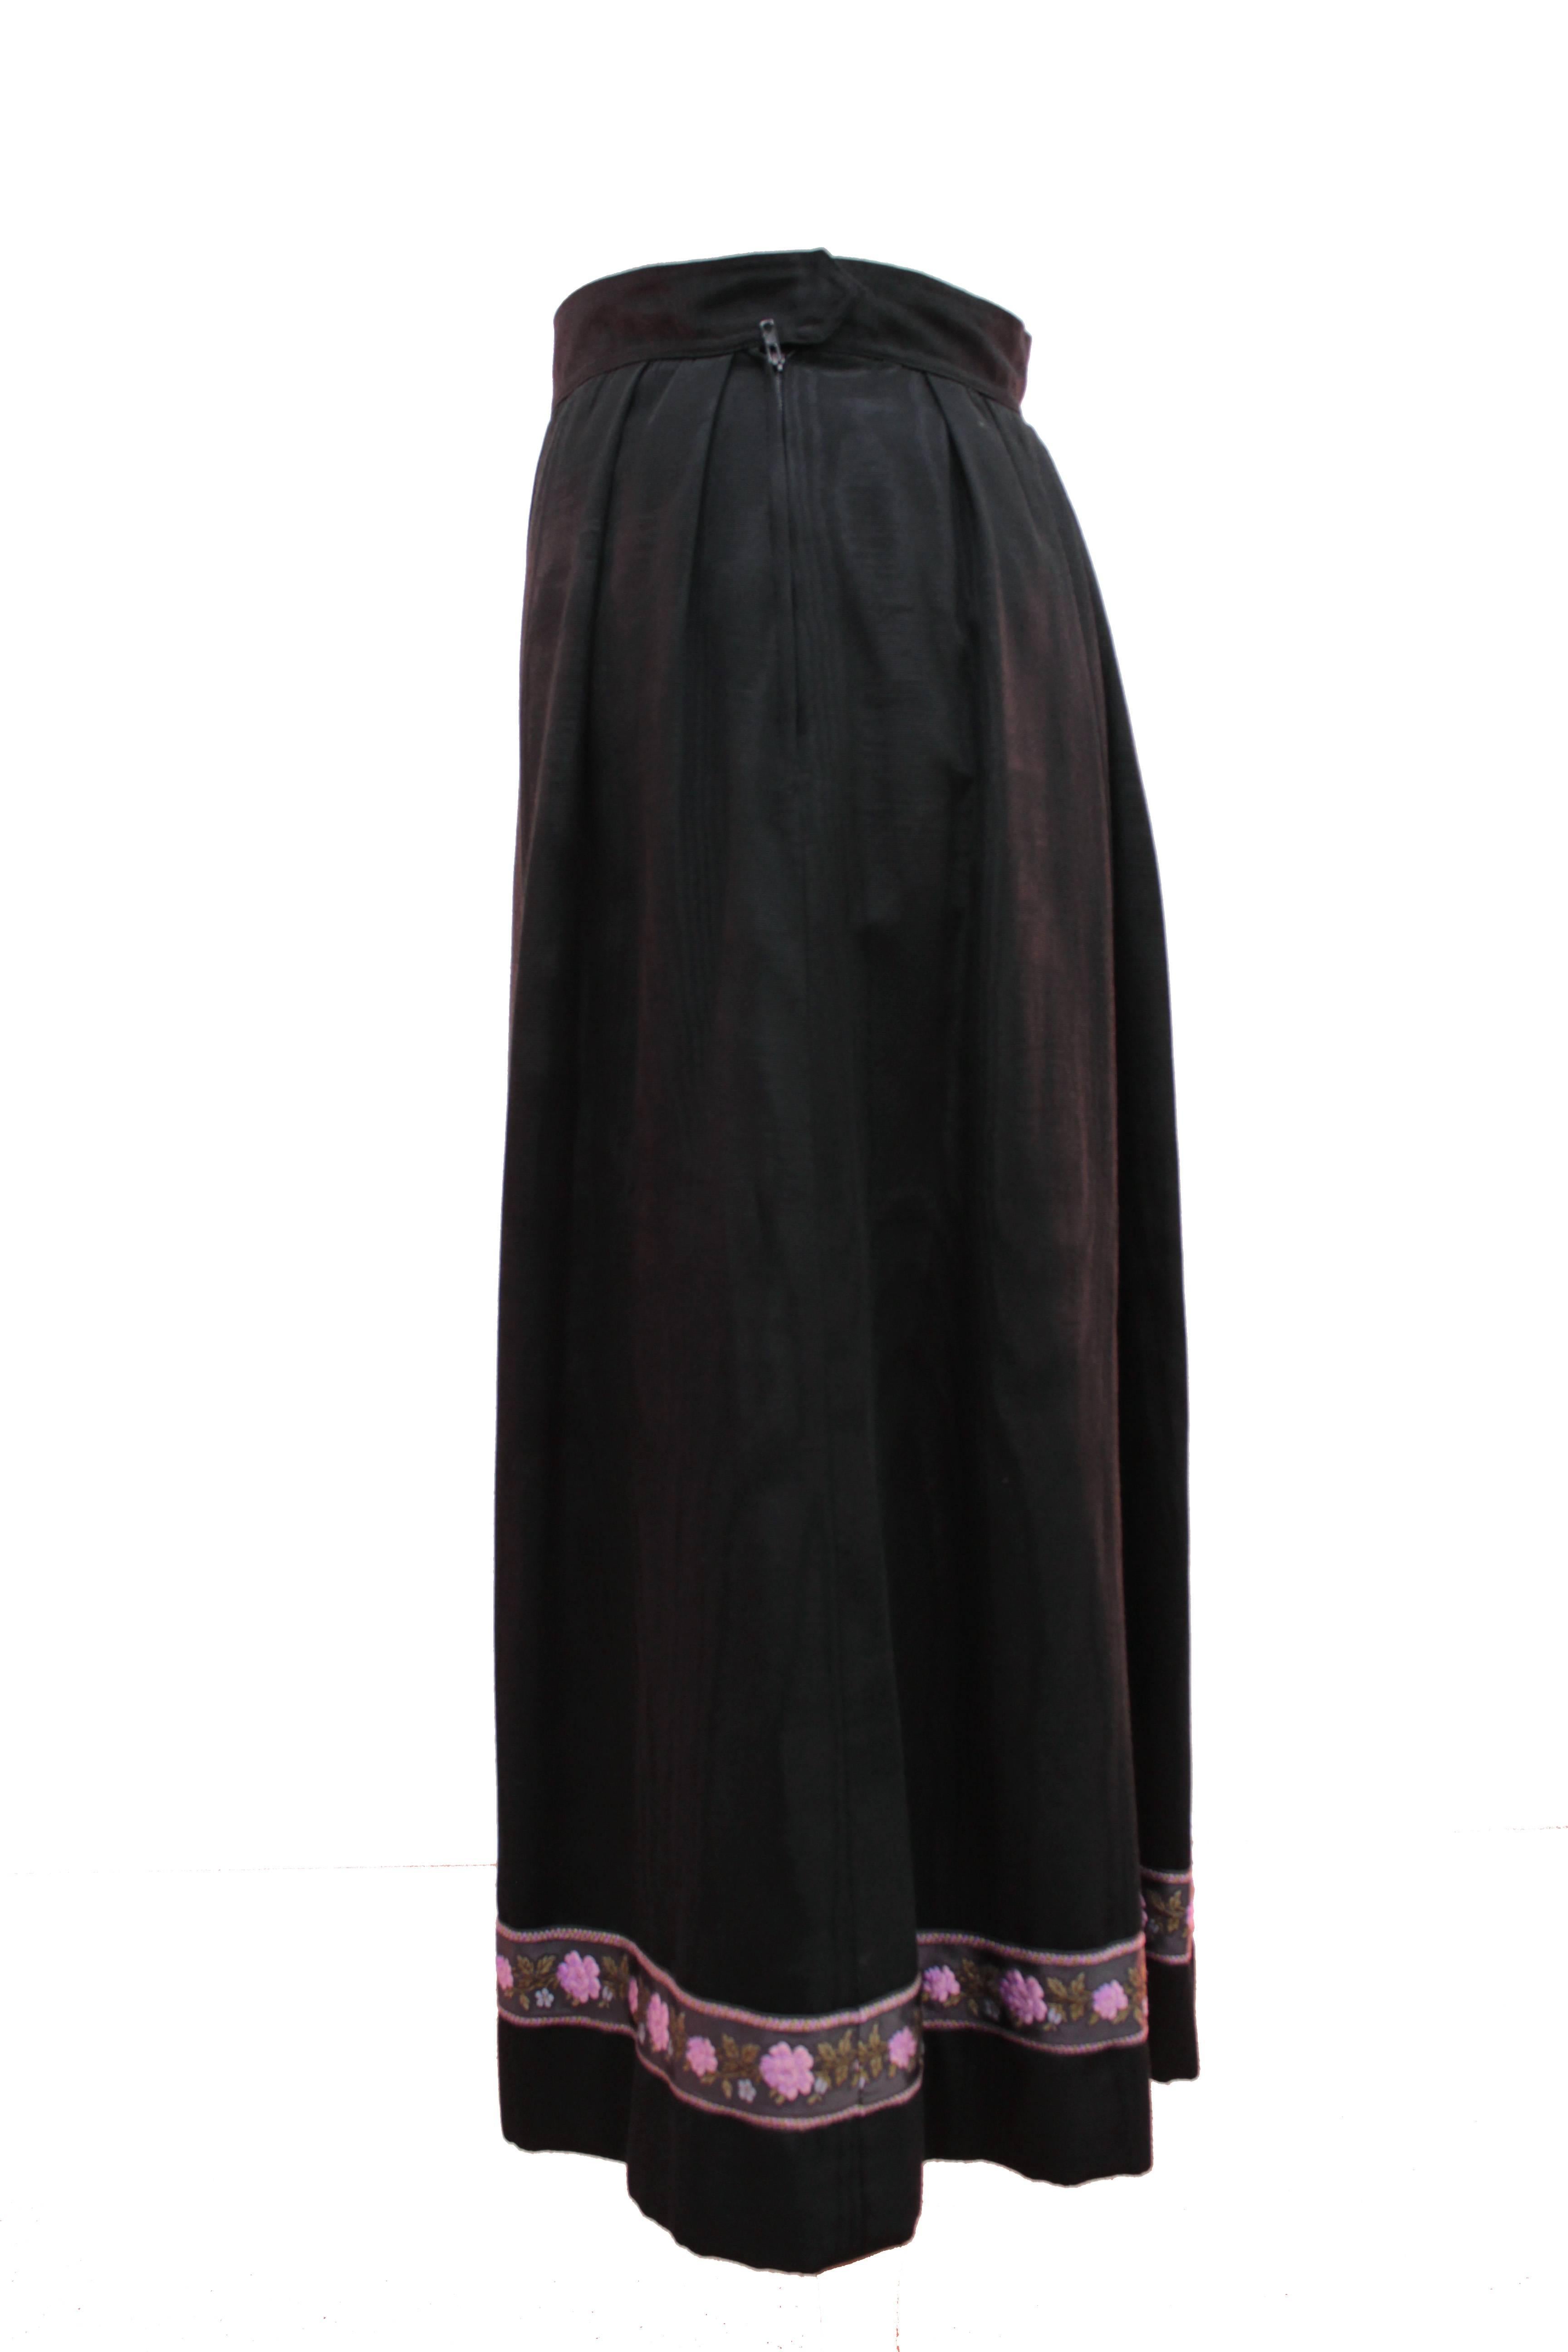 Women's Yves Saint Laurent Silk Skirt Black Moire Embroidered Hem Russian Peasant 70s